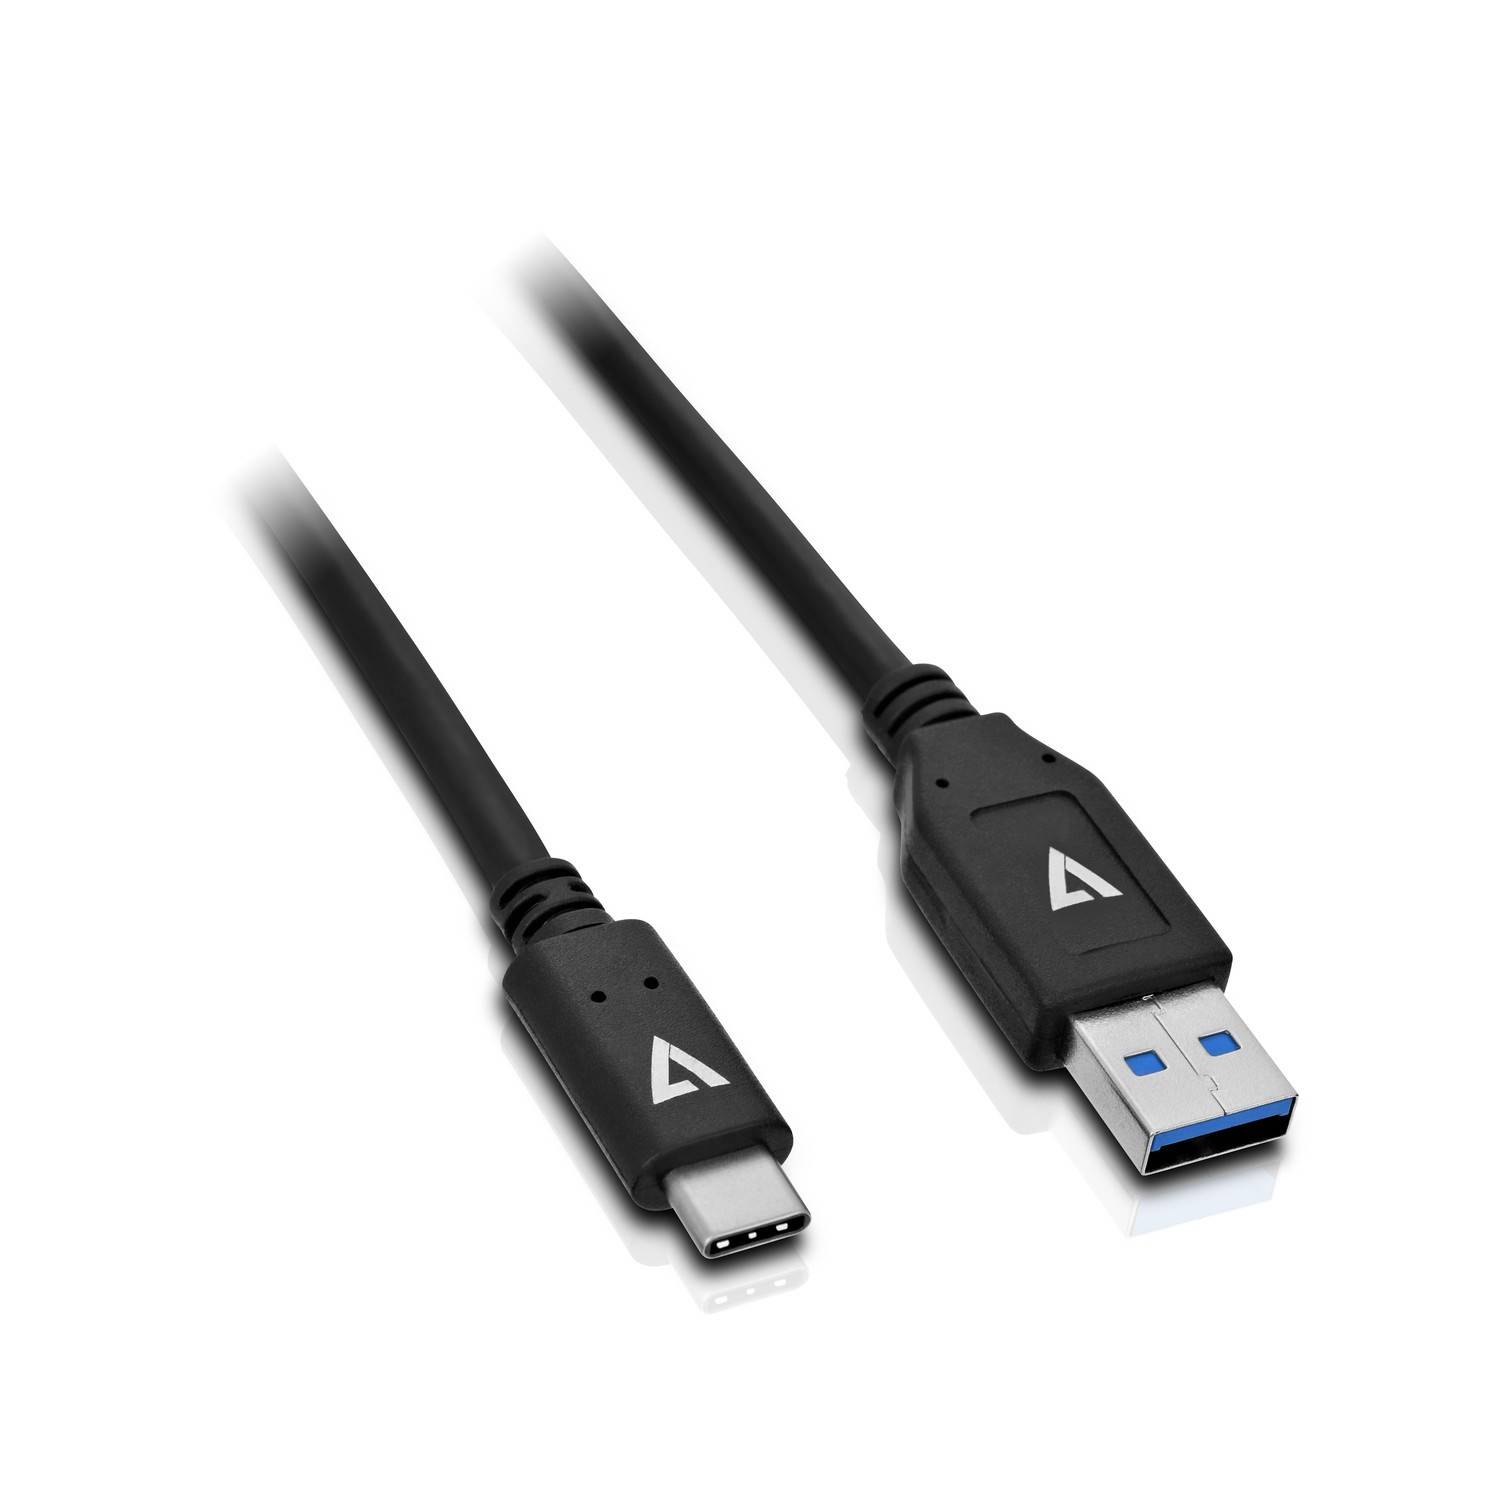 Rca Informatique - Image du produit : USB 2.0 A TO USB-C CABLE 1M BLK 480MBPS 3A PWR AND DATA CABLE